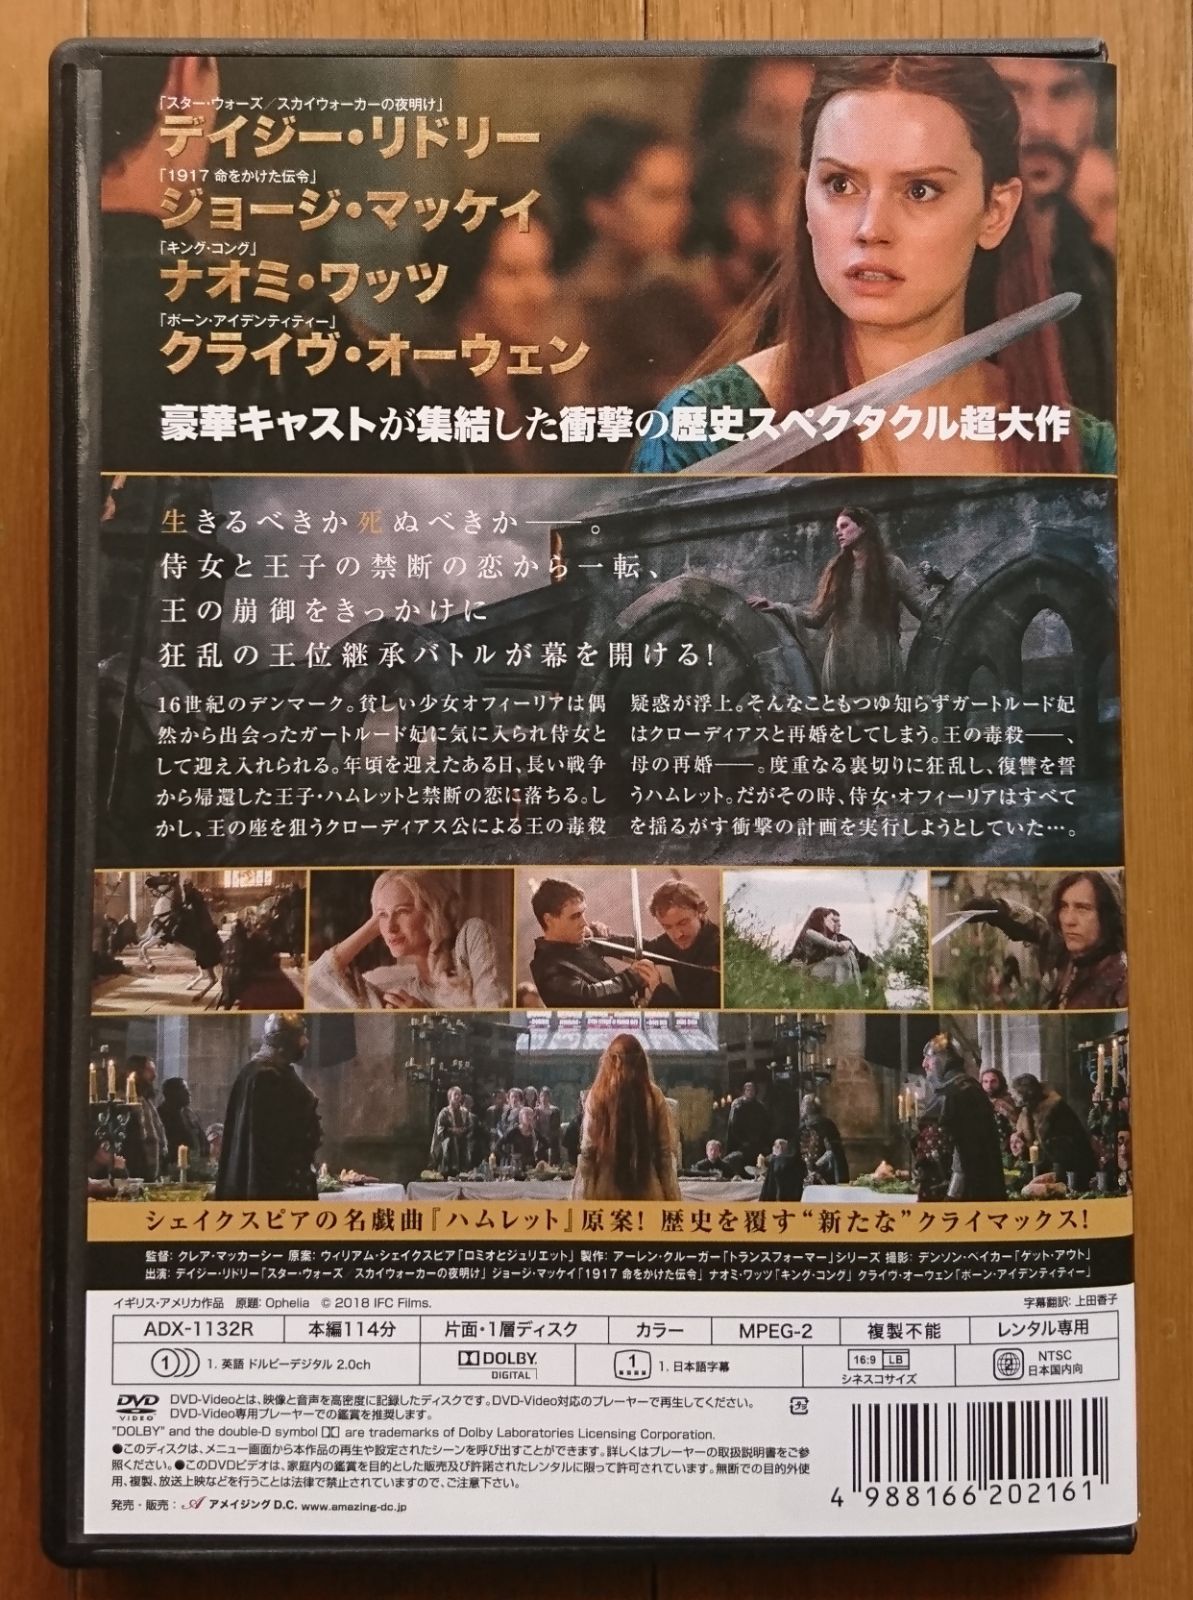 レンタル版DVD】オフィーリア -奪われた王国- 出演:デイジー・リドリー 